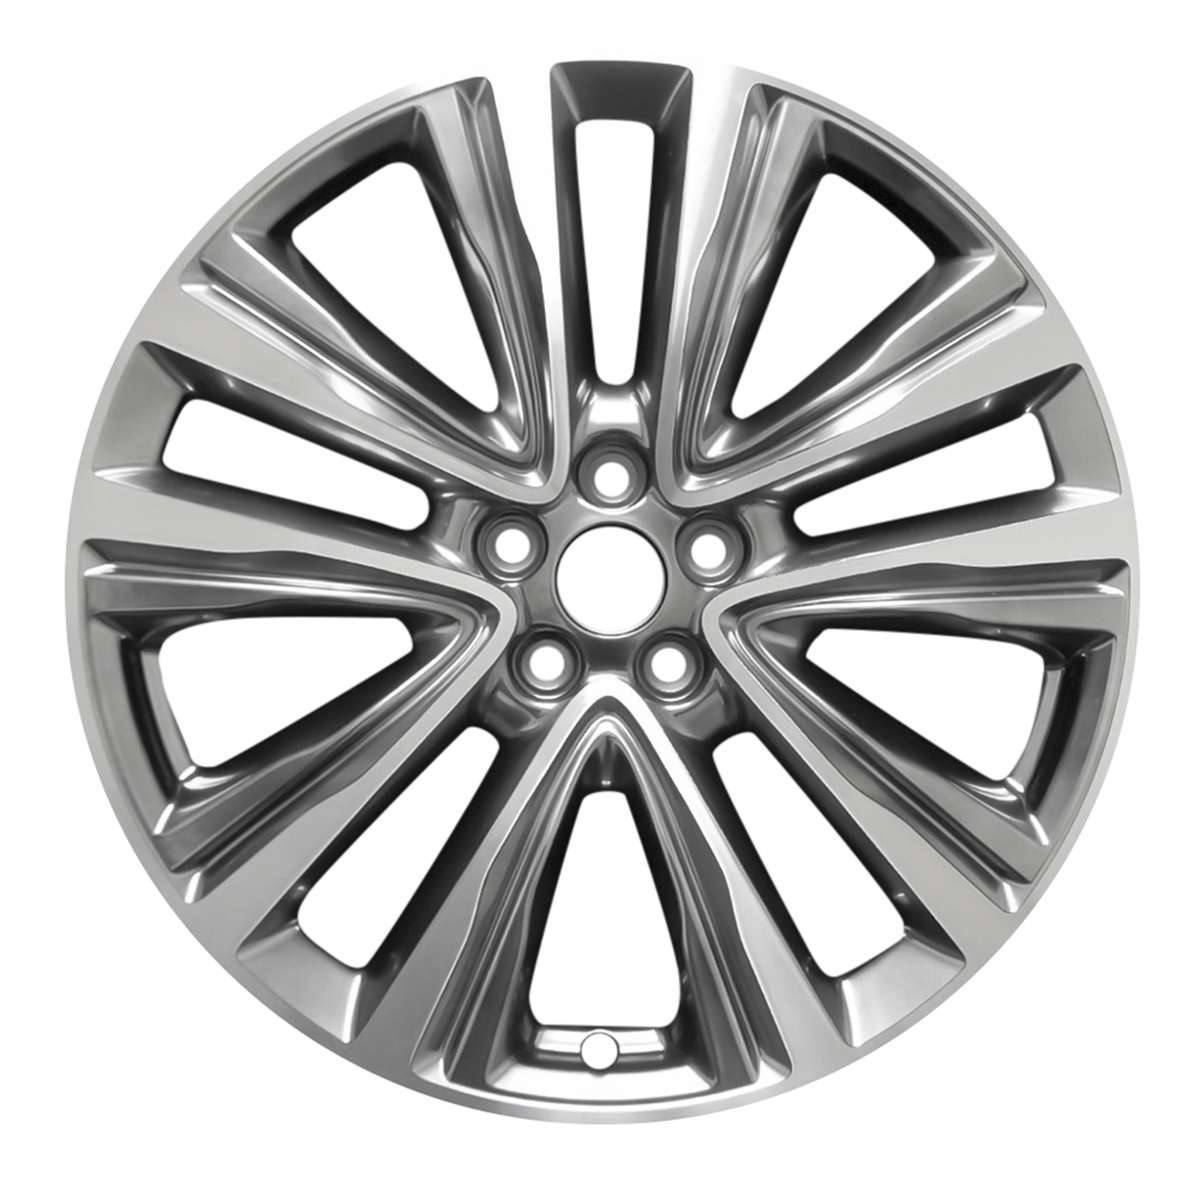 2017 Lincoln MKX 20" OEM Wheel Rim W10074MLH